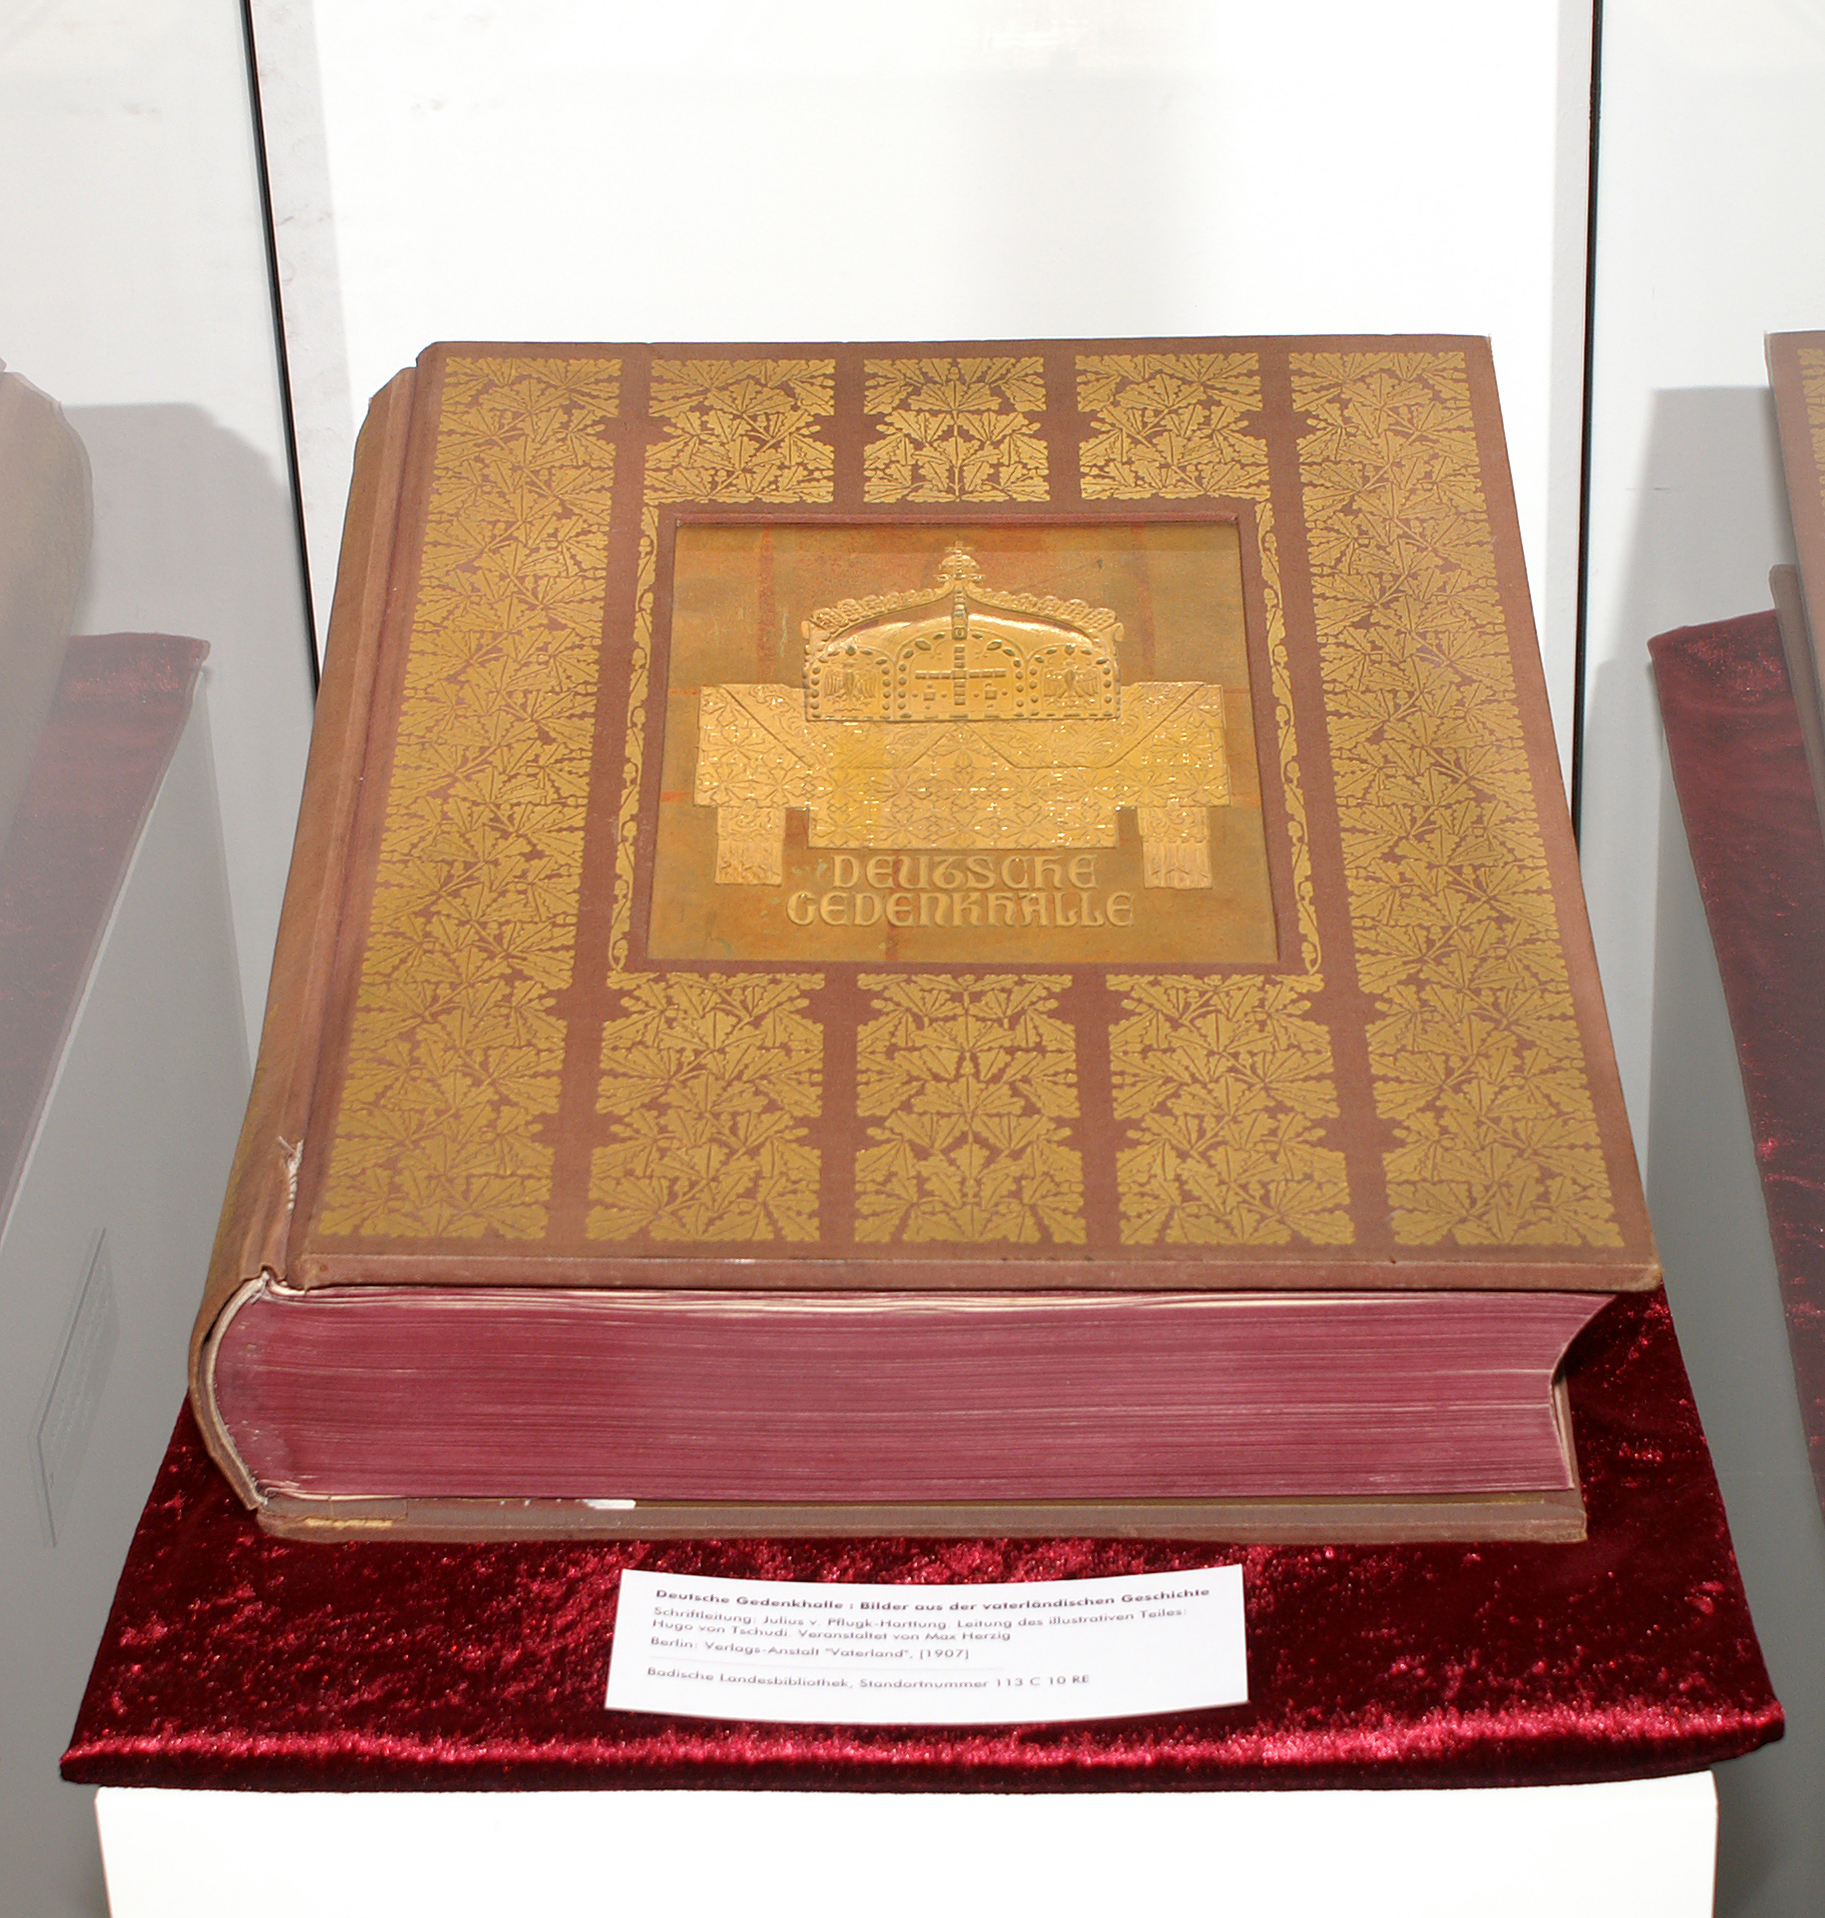 Ausstellungsansicht des Buches "Deutsche Gedenkhalle". Das Buch ist rot mit goldenen Prägungen. Der Schnitt ist dunkelrot.